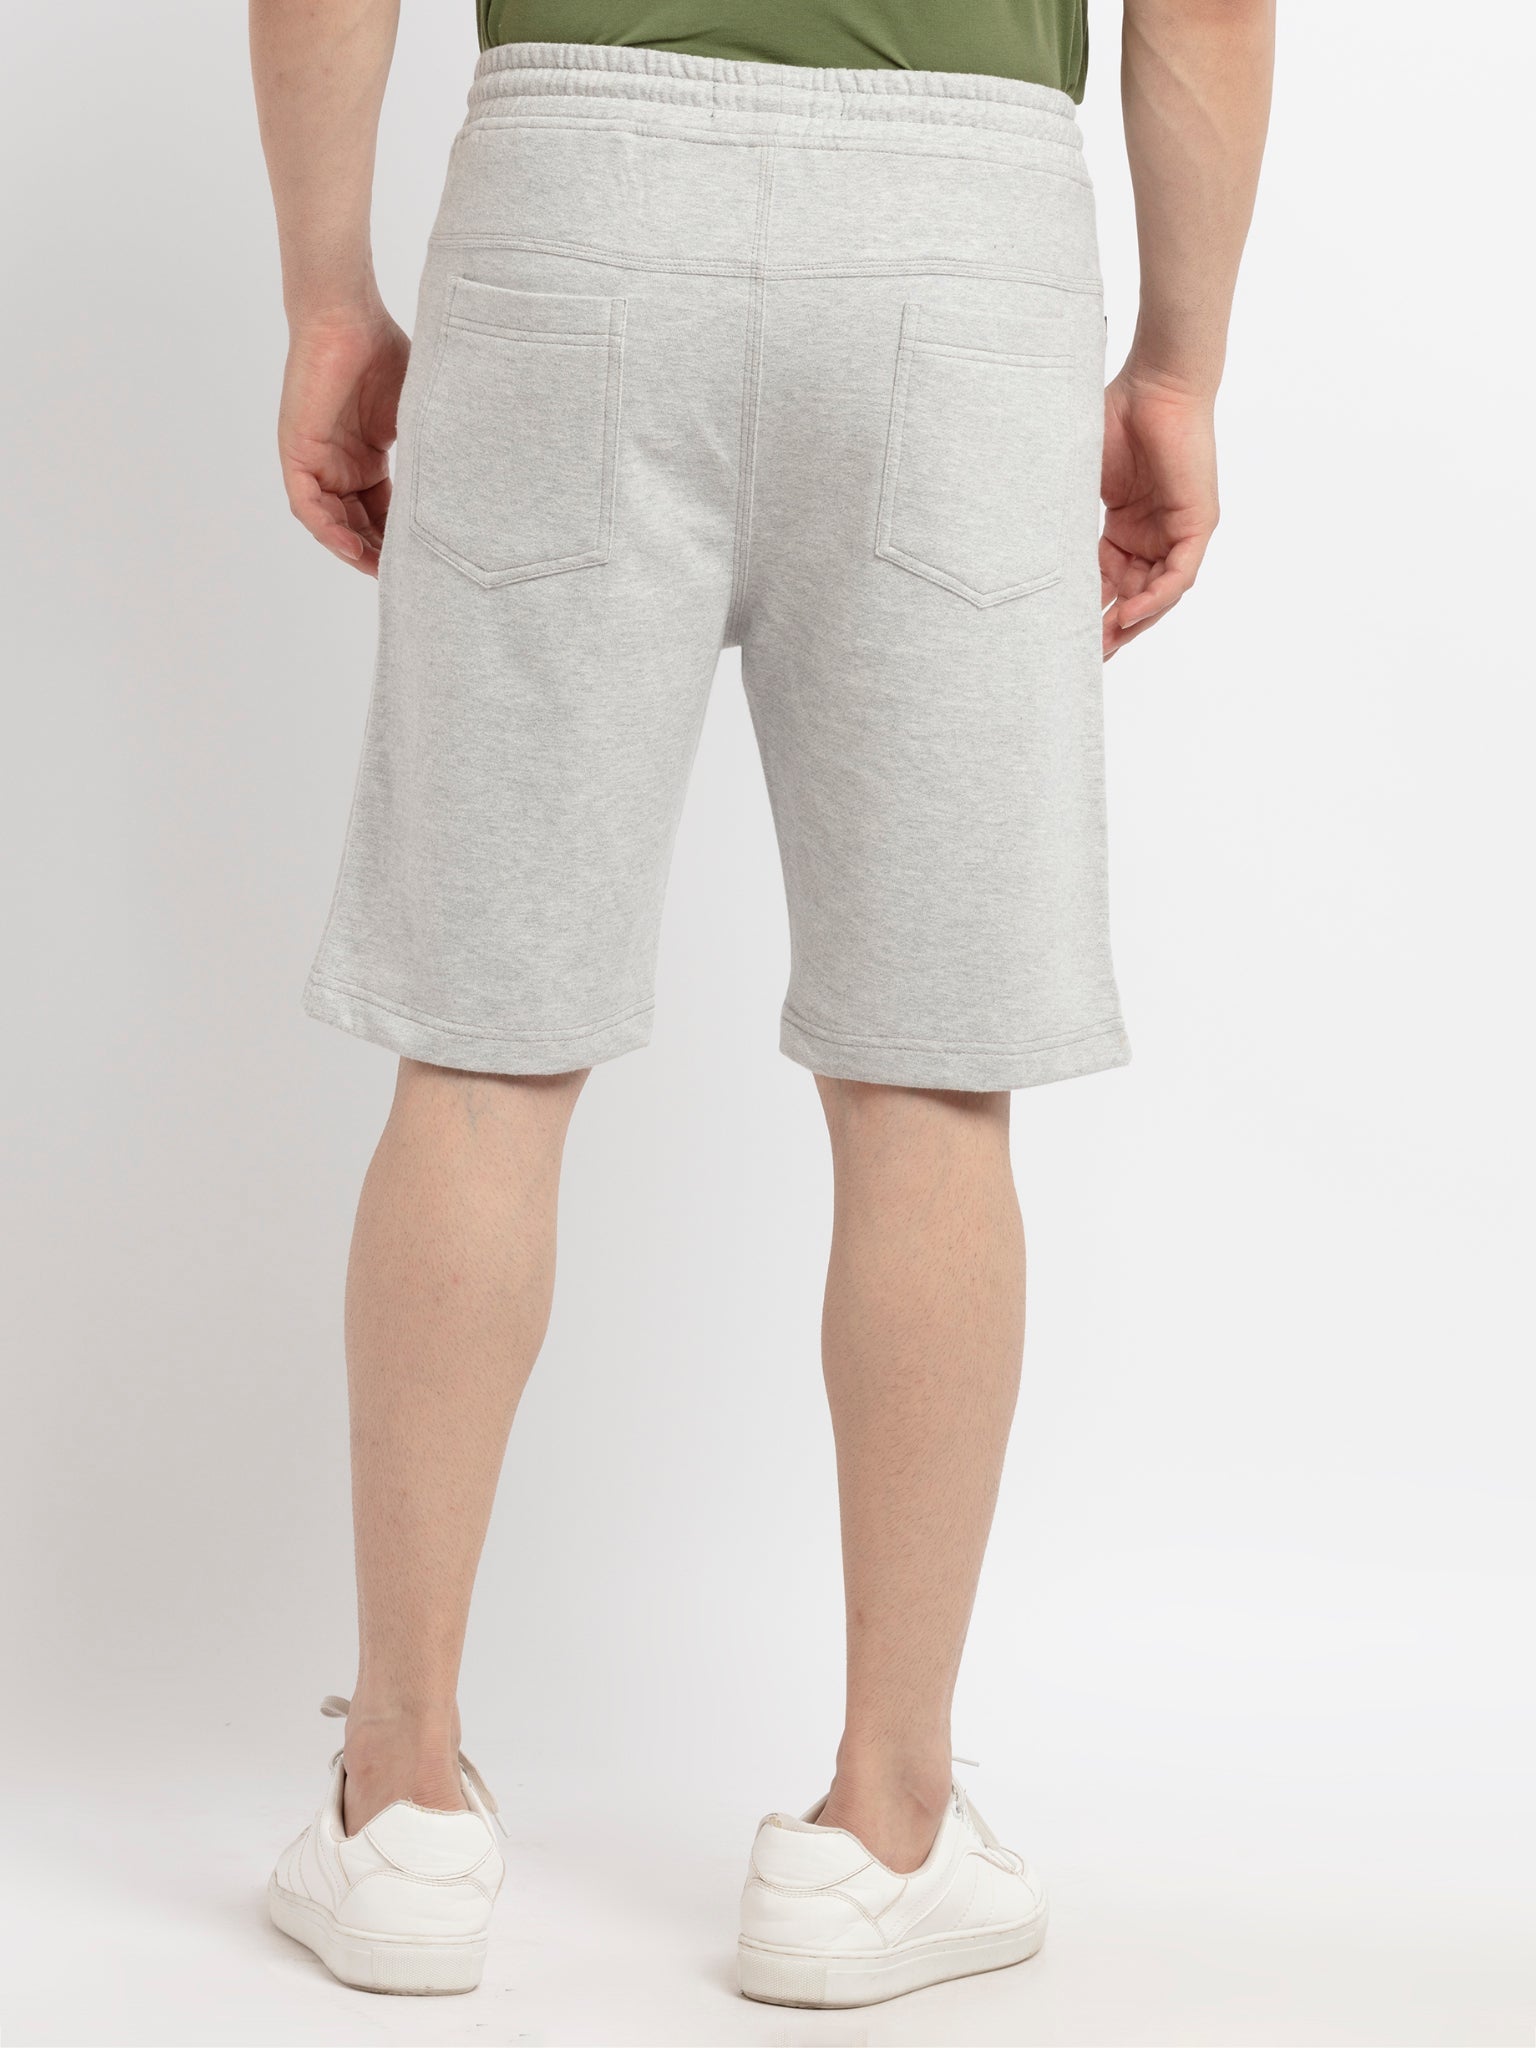 Mens Printed Shorts